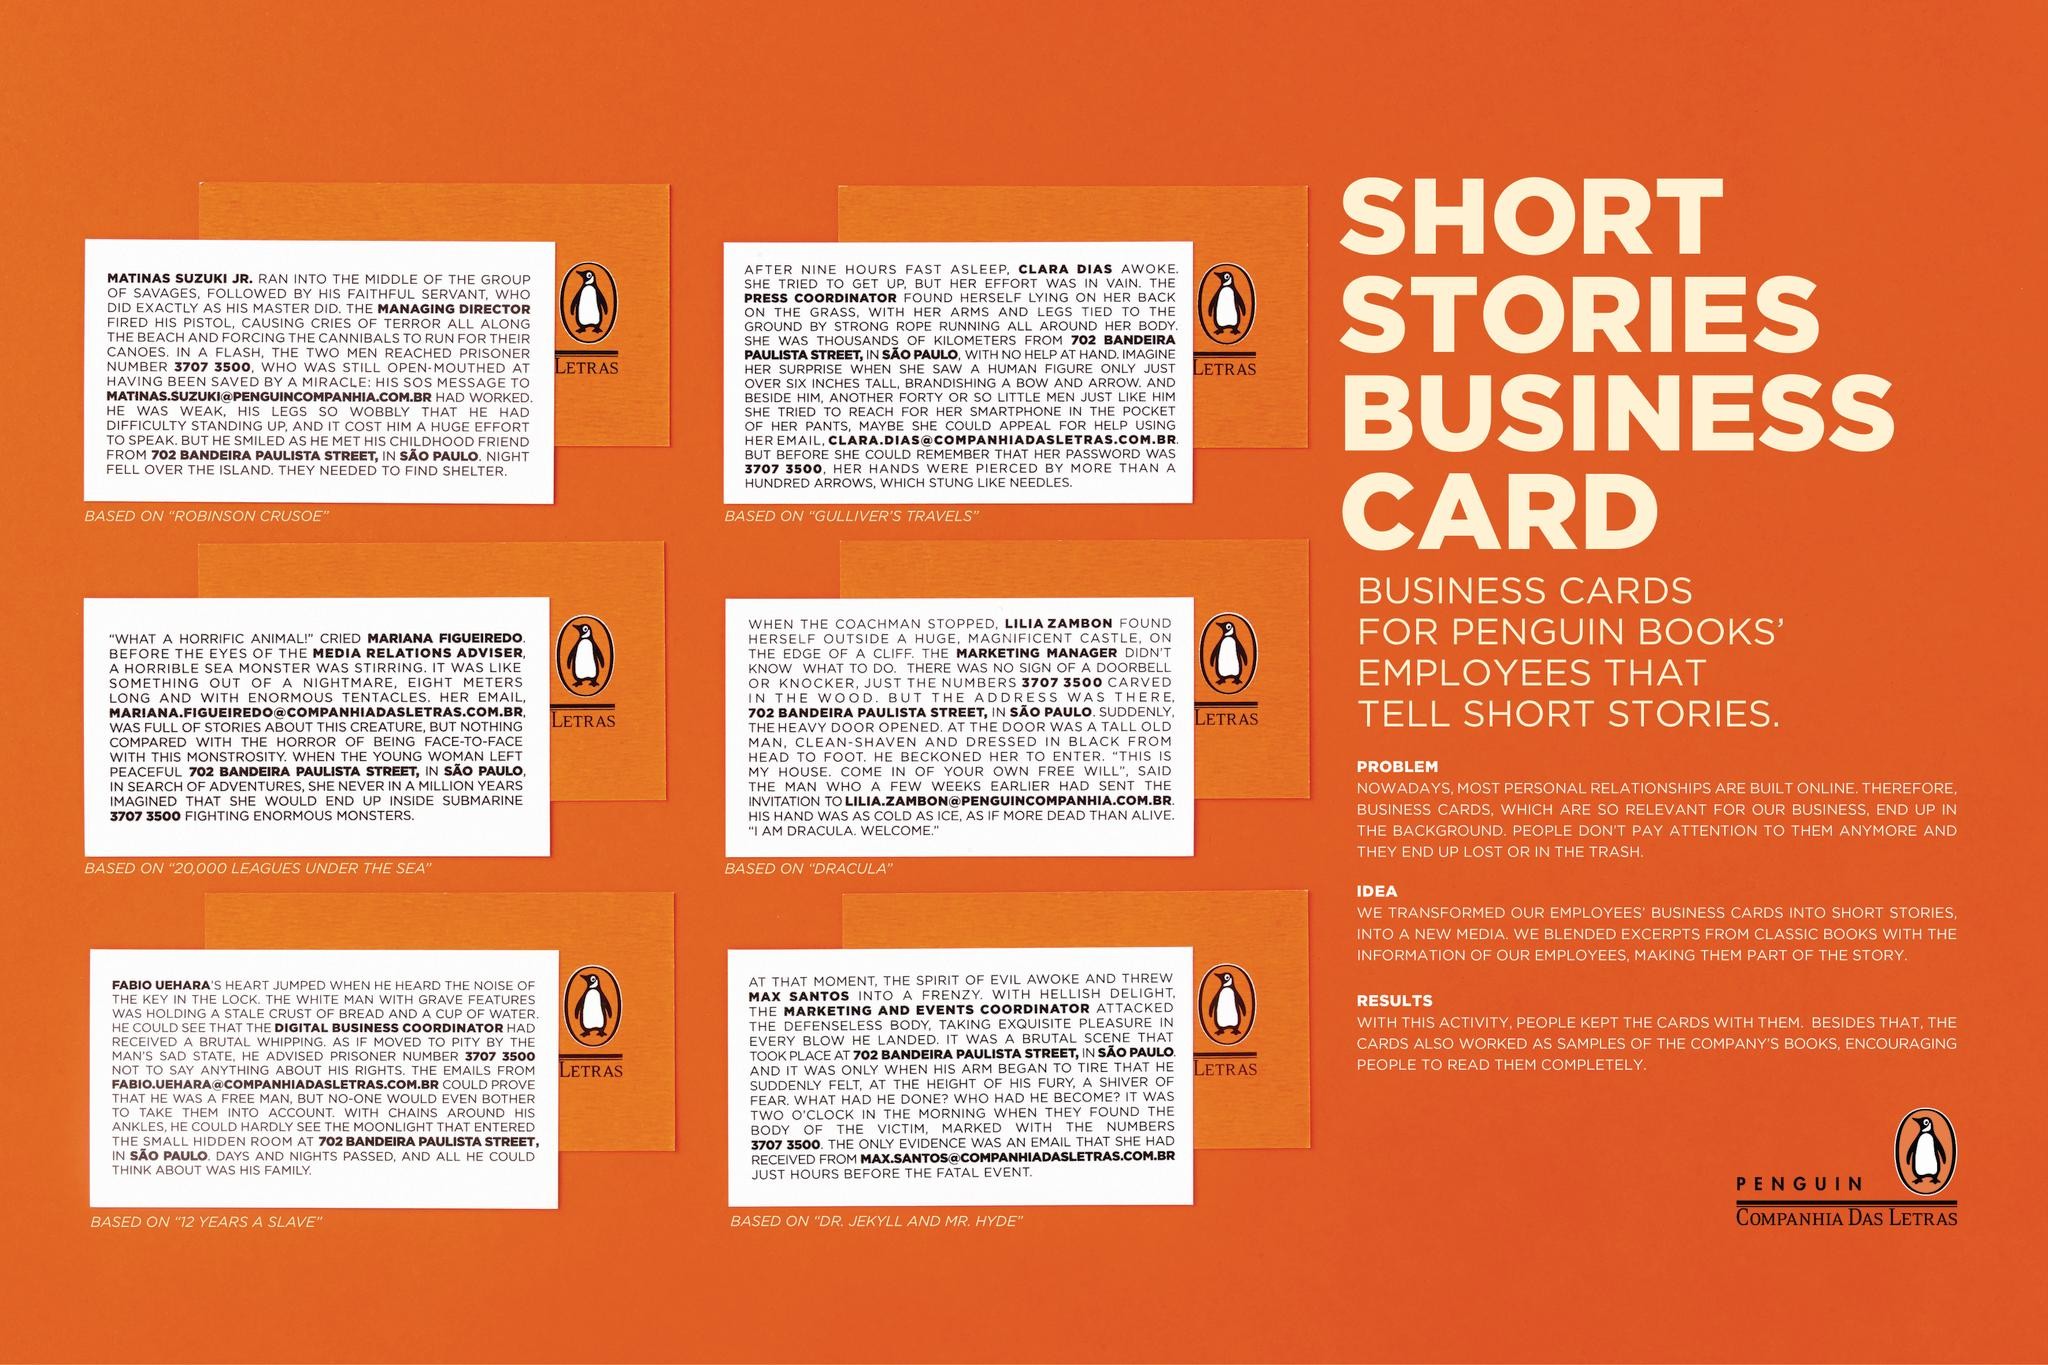 SHORT STORIES BUSINESS CARD